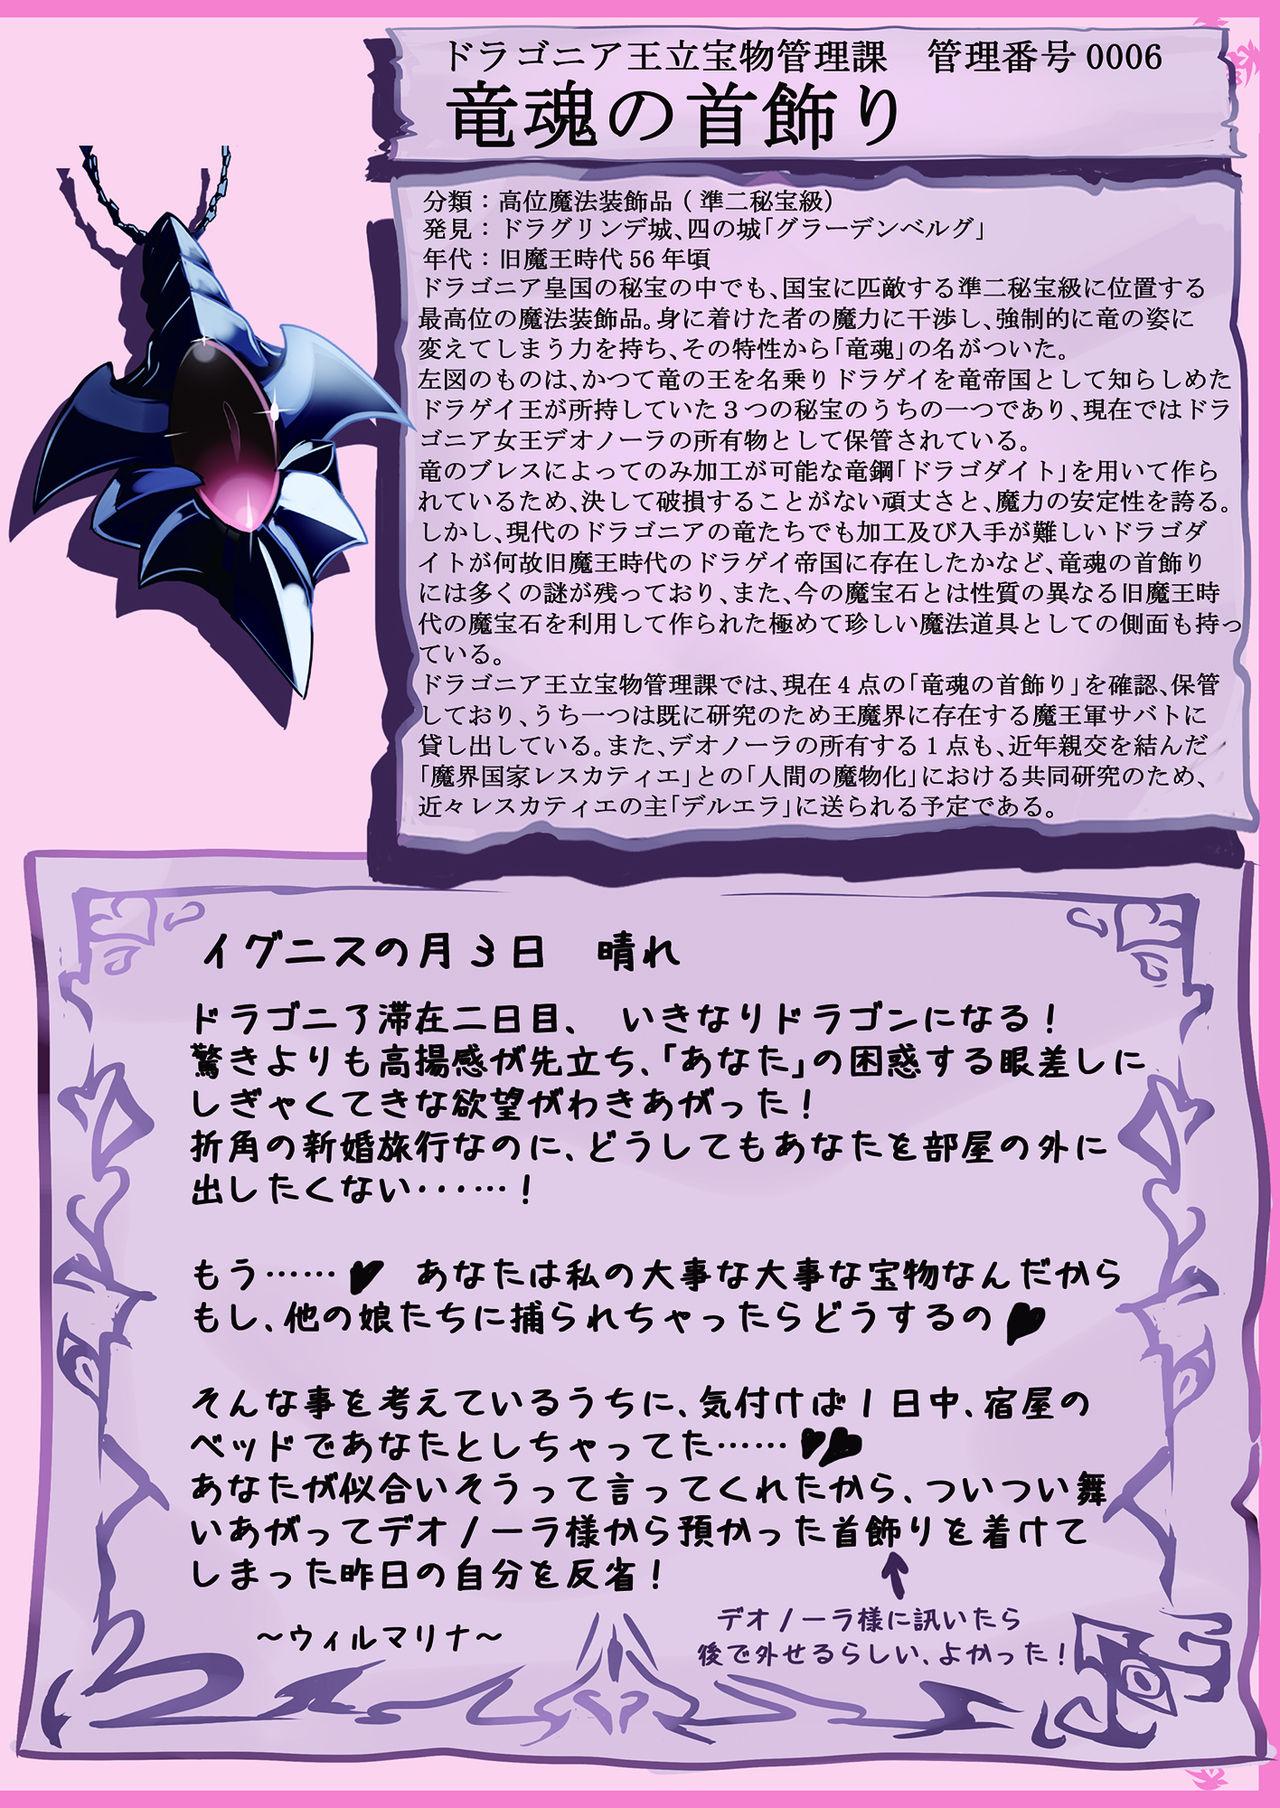 Upskirt Mamono Musume Zukan World Guide Gaiden 1.5 Wilmarina Shinkonryokouki - Mamono musume zukan Boss - Page 3